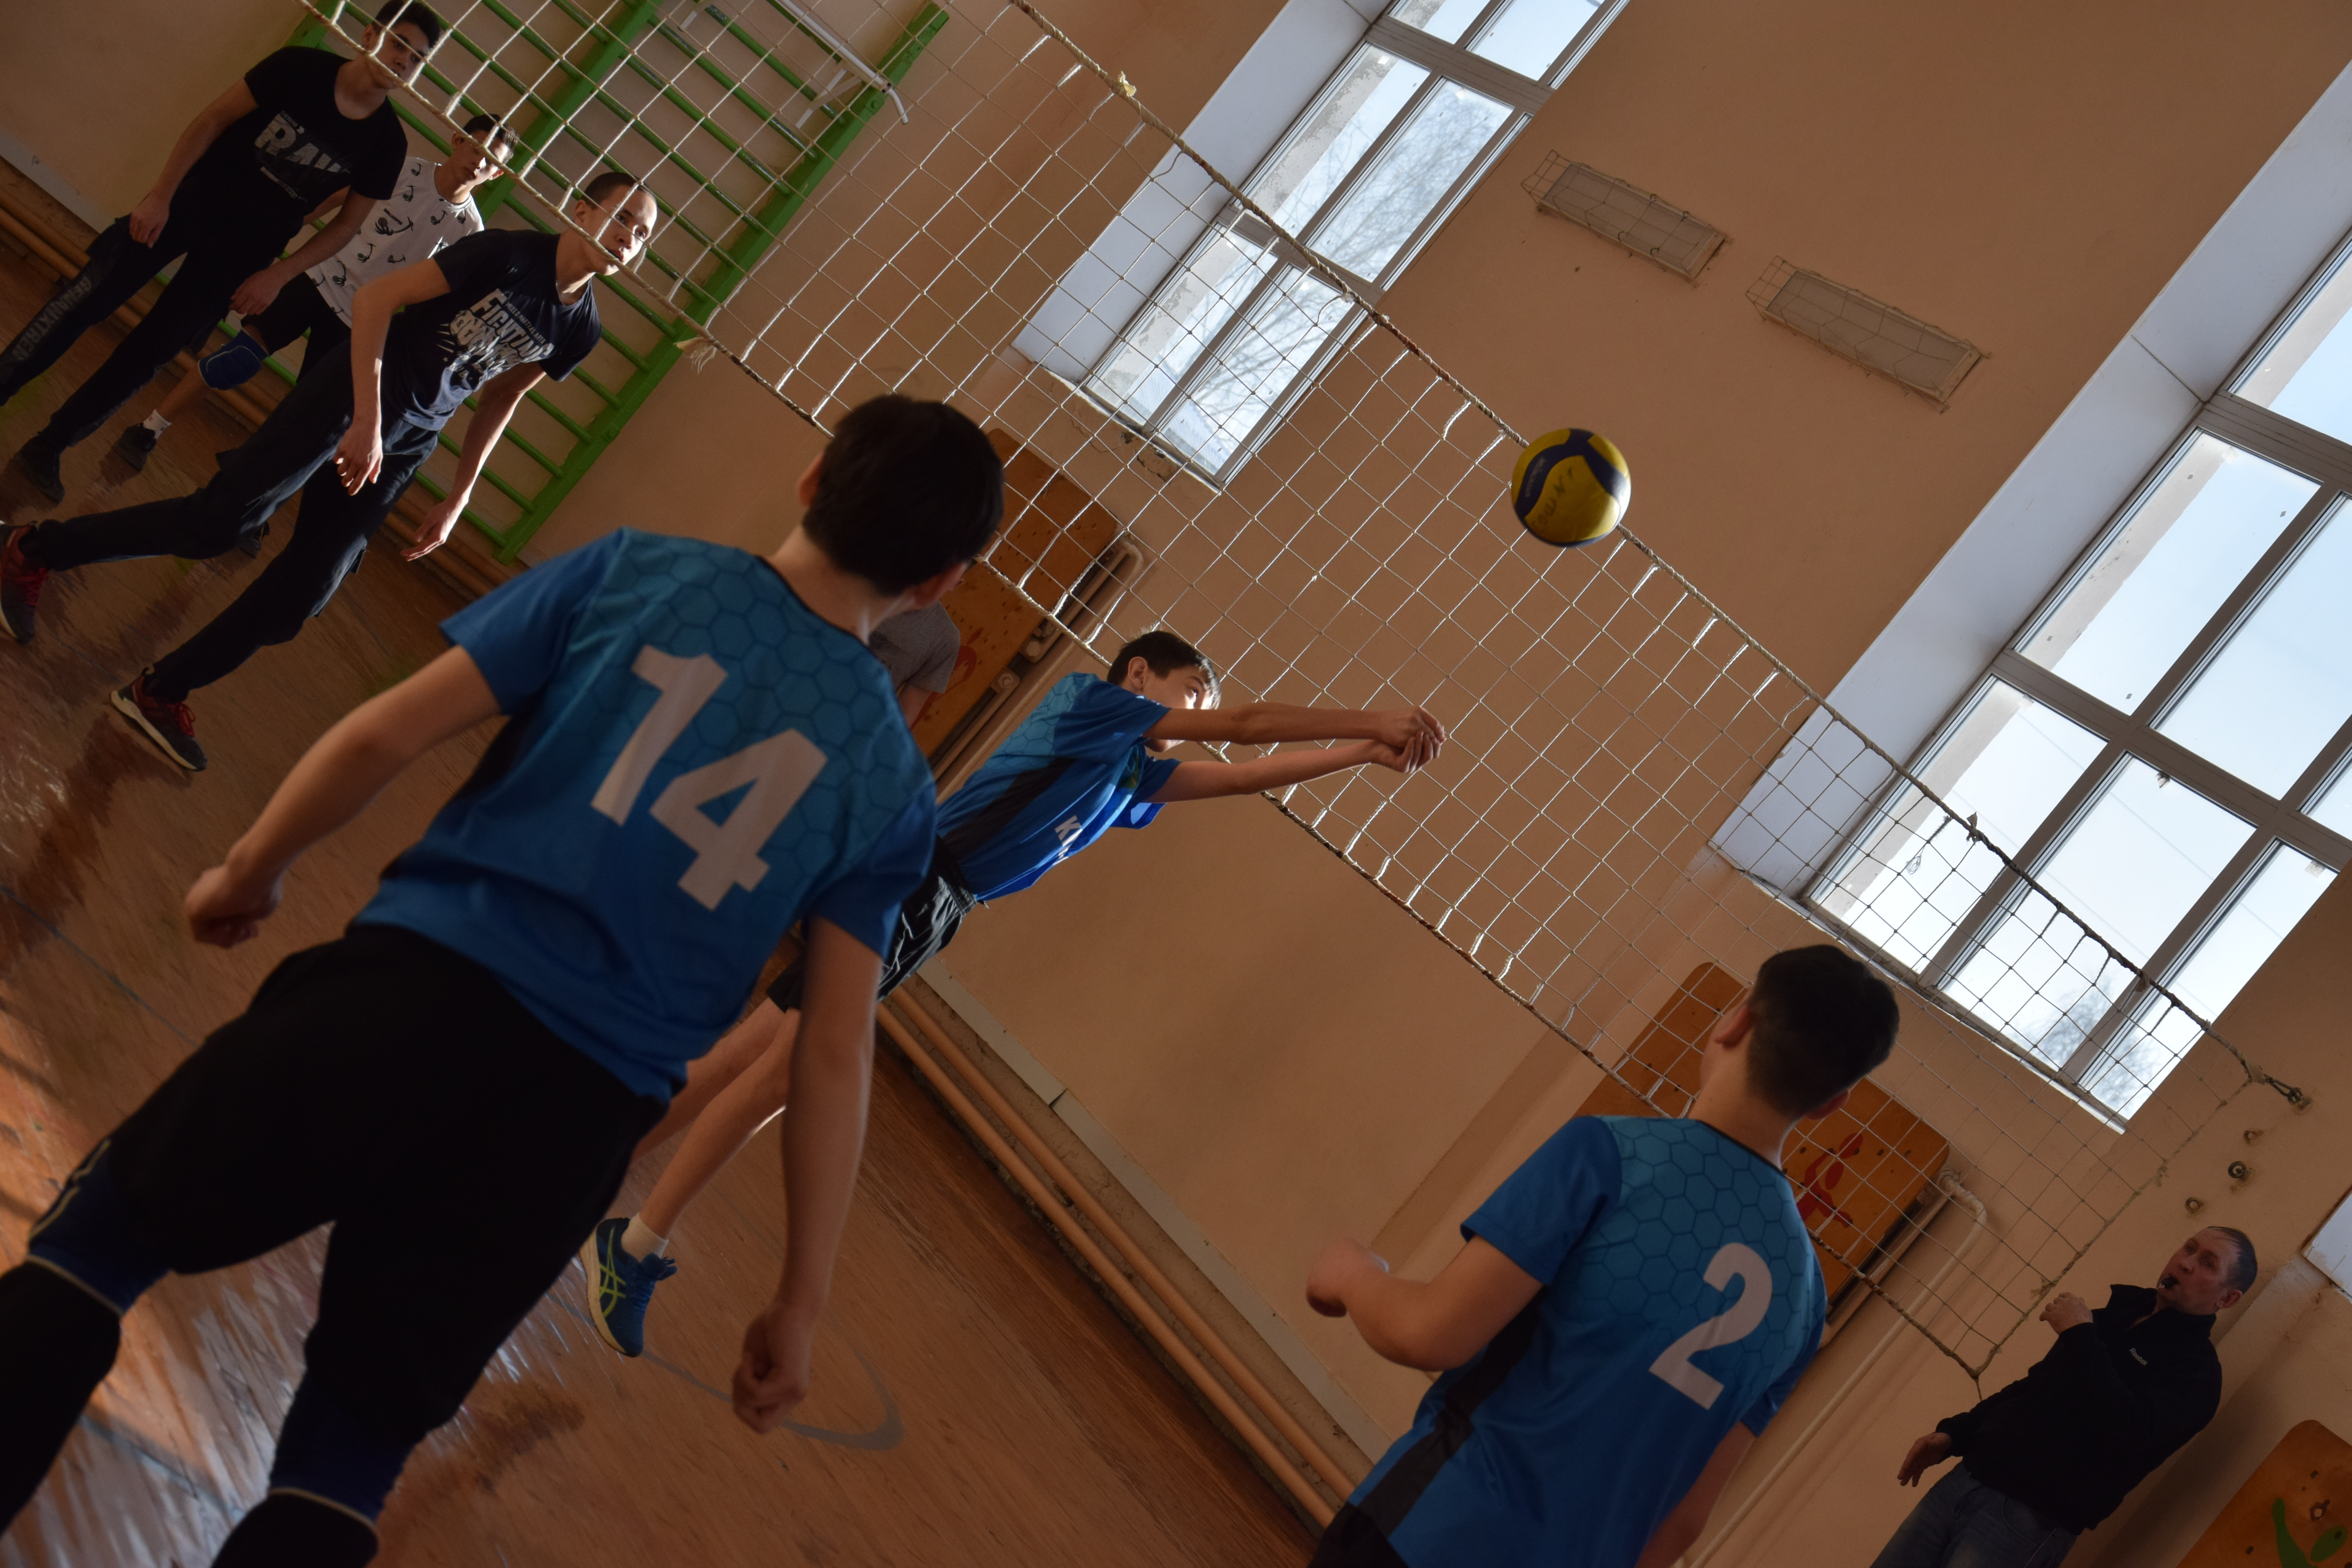 В Бураево состоялся районный турнир по волейболу, посвященный памяти воина–интернационалиста Ильшата Адуллина